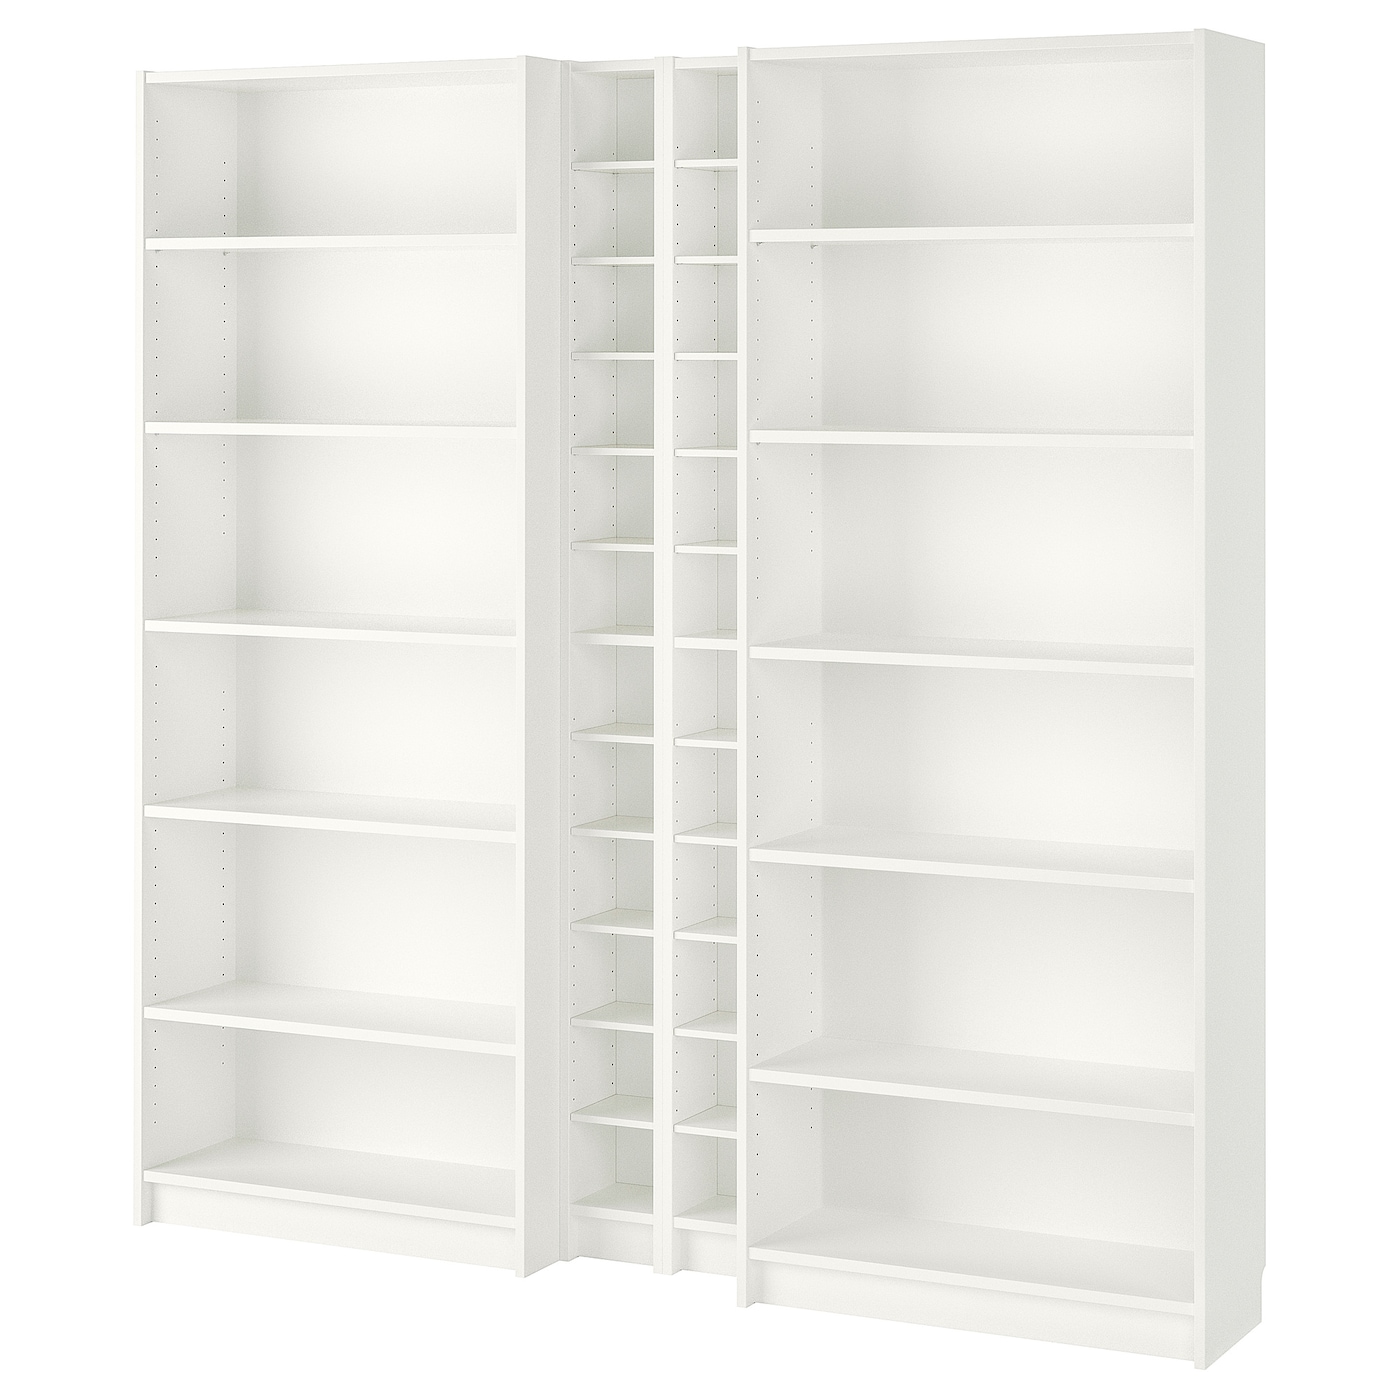 Открытый книжный шкаф - BILLY IKEA/БИЛЛИ ИКЕА, 28х200х202 см, белый